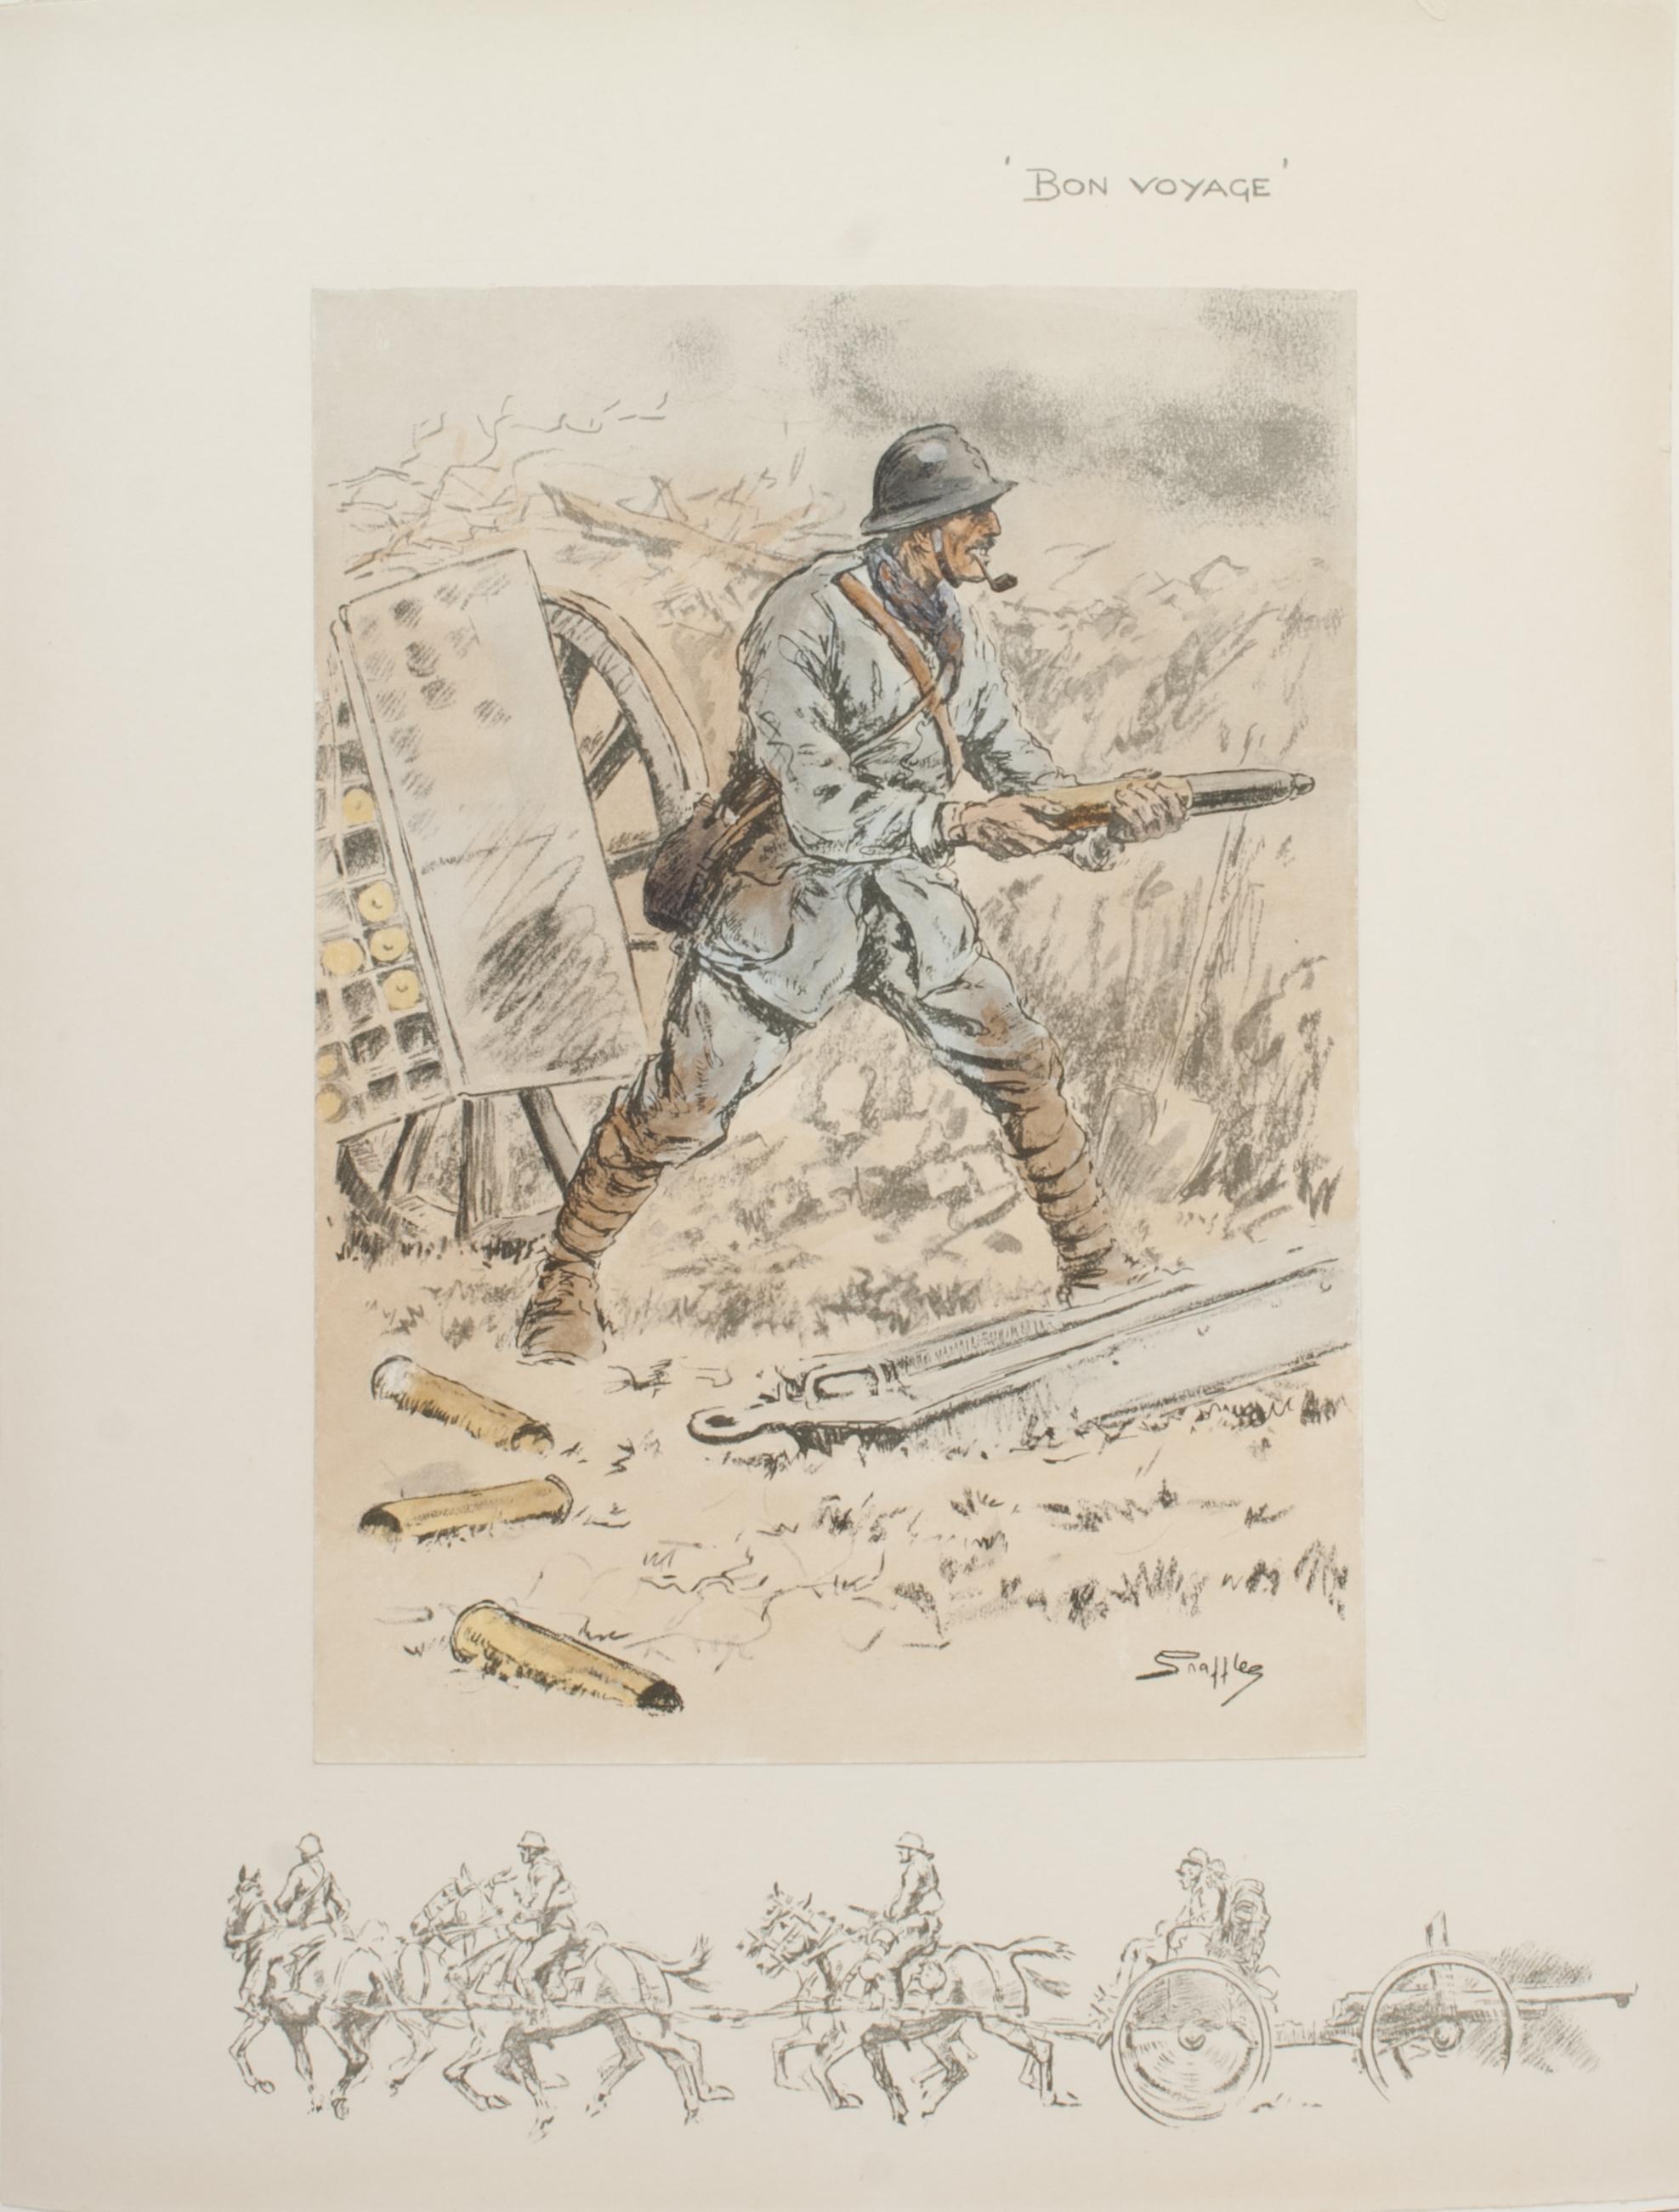 Vintage Snaffles WWI Military Print, Bon Voyage.
Une bonne lithographie de Snaffles colorée à la main, impression militaire de la Première Guerre mondiale 